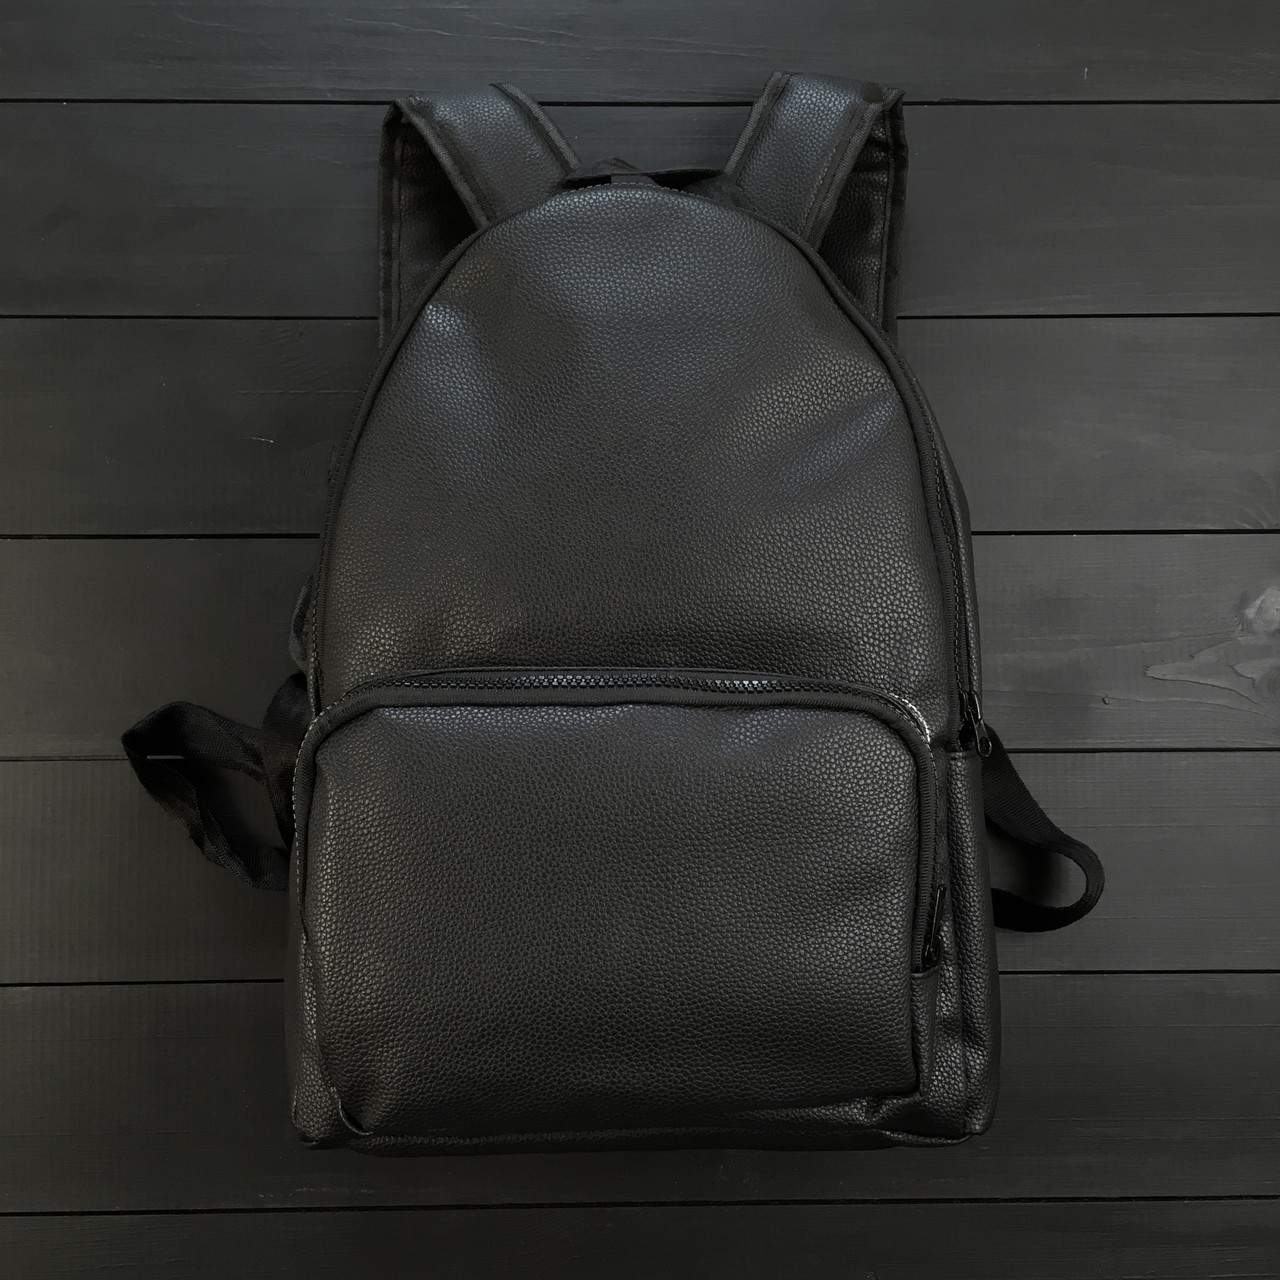 Рюкзак шкіряний чорний унісекс | Рюкзак міський, шкільний ЛЮКС якості